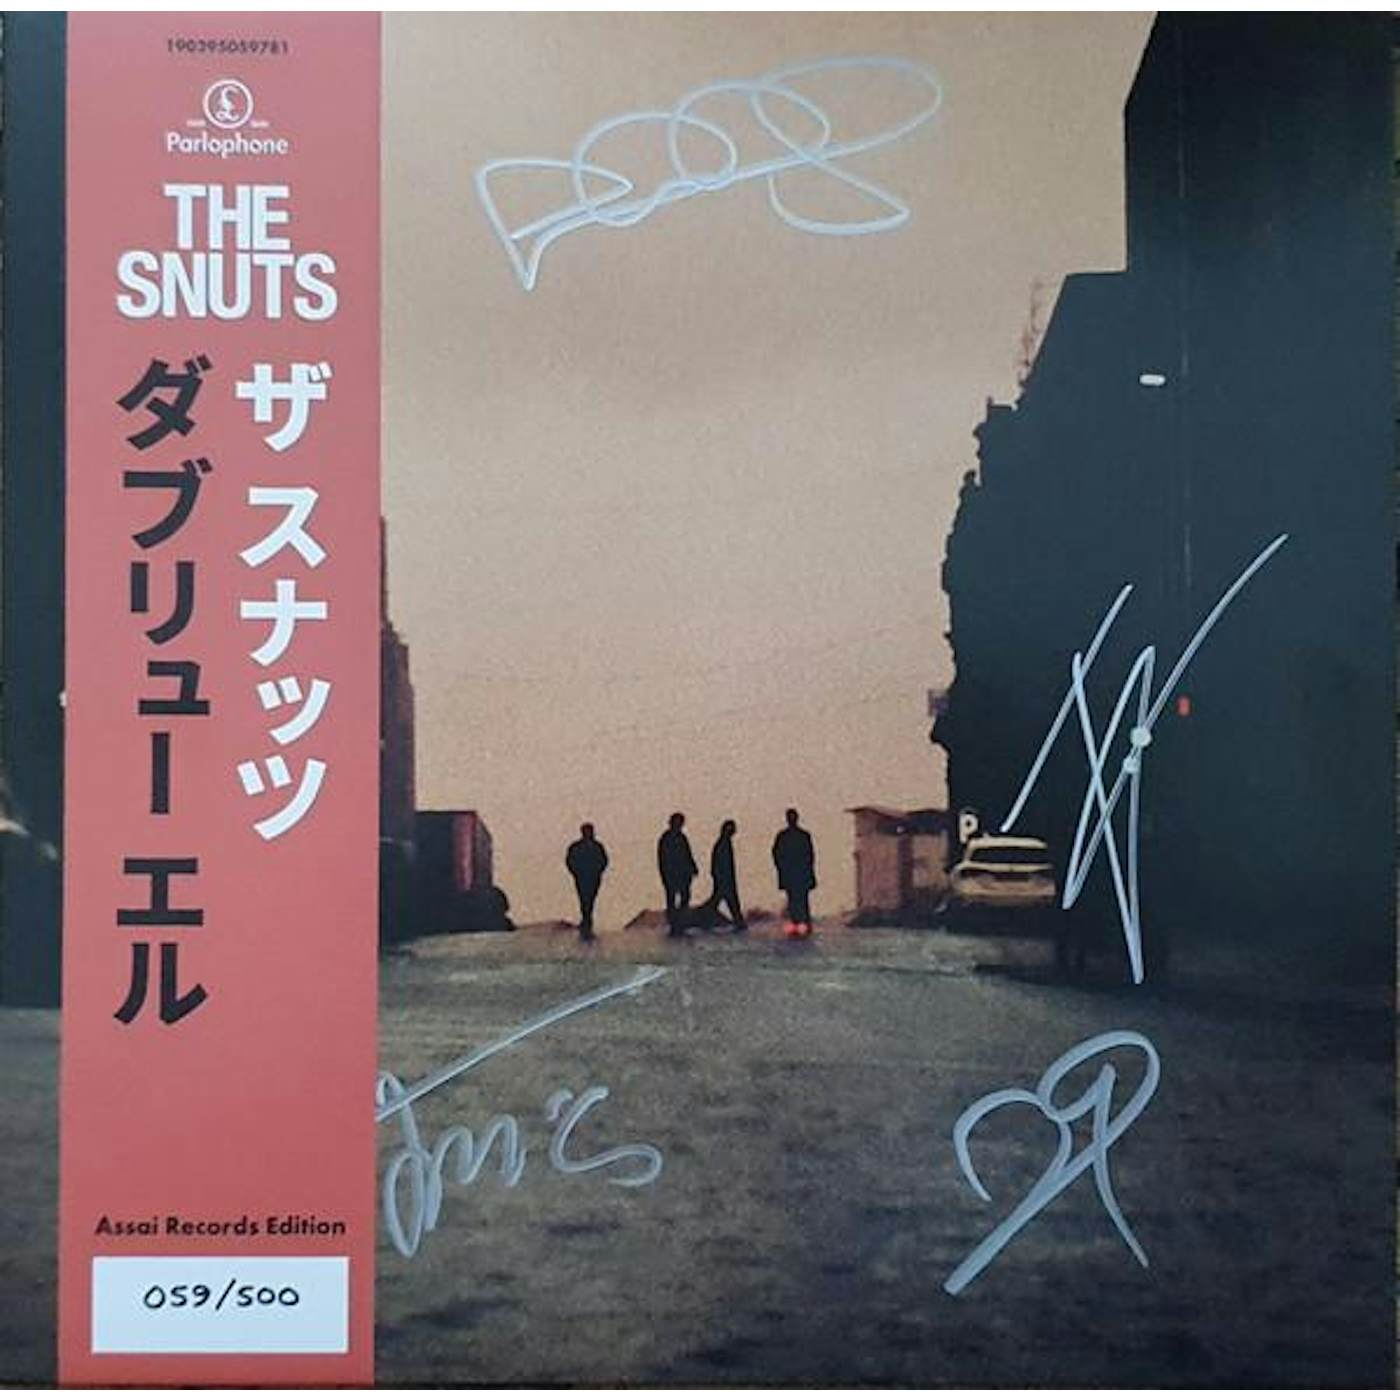 The Snuts W.L. Vinyl Record